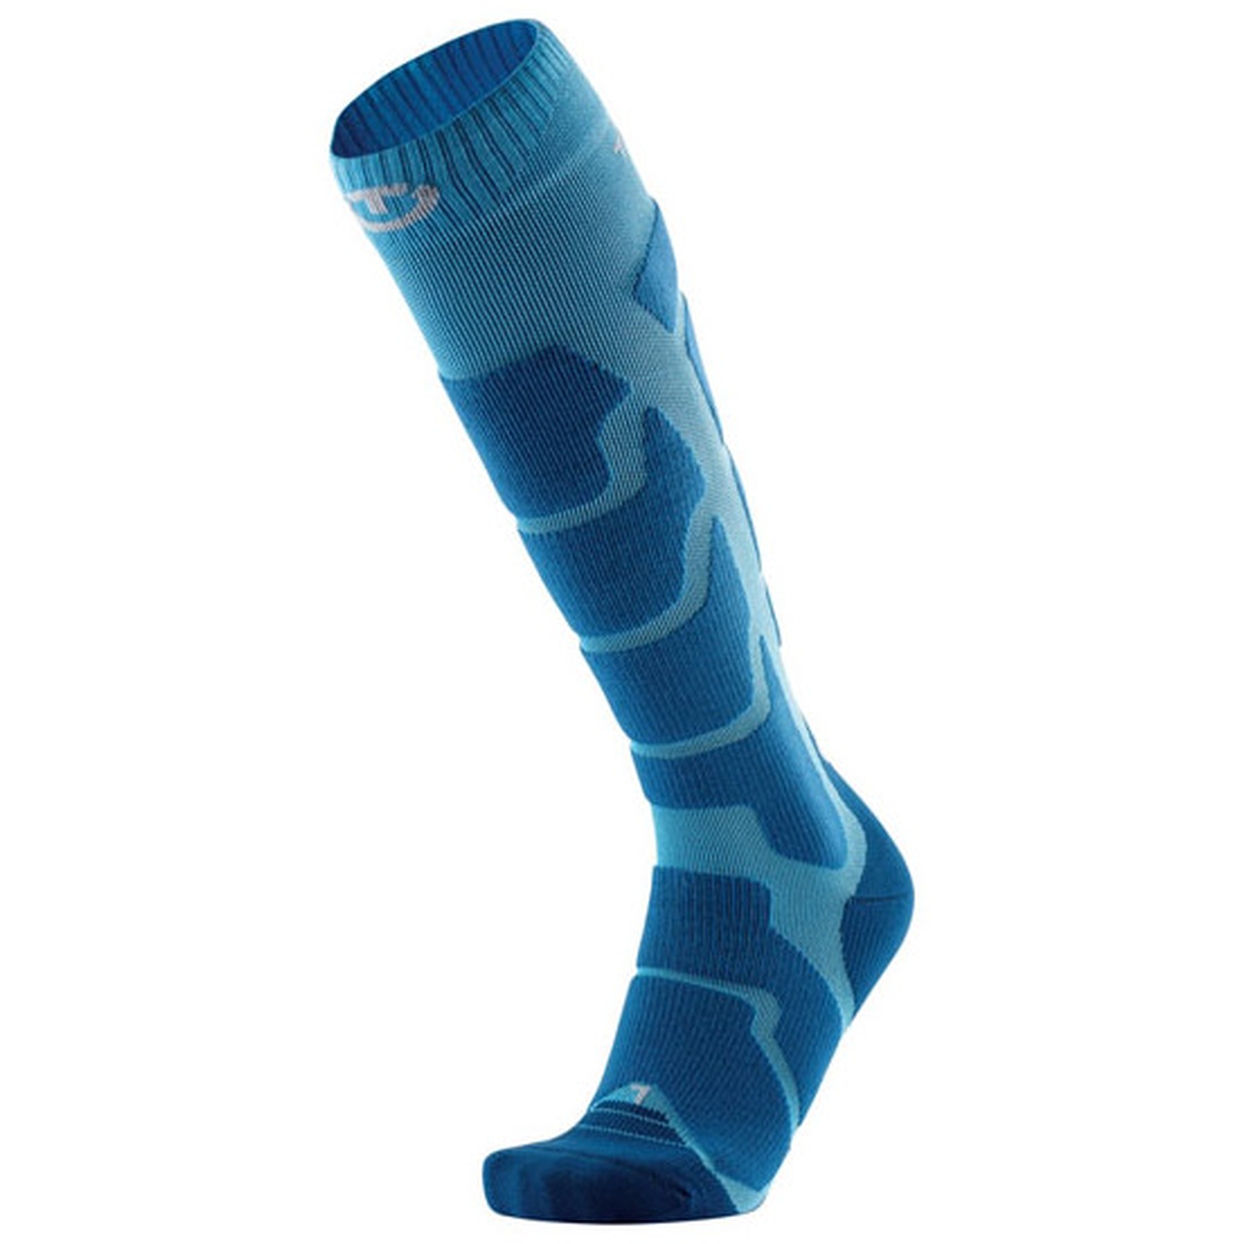 Produktbild von therm-ic Ski Insulation Skisocken - blau